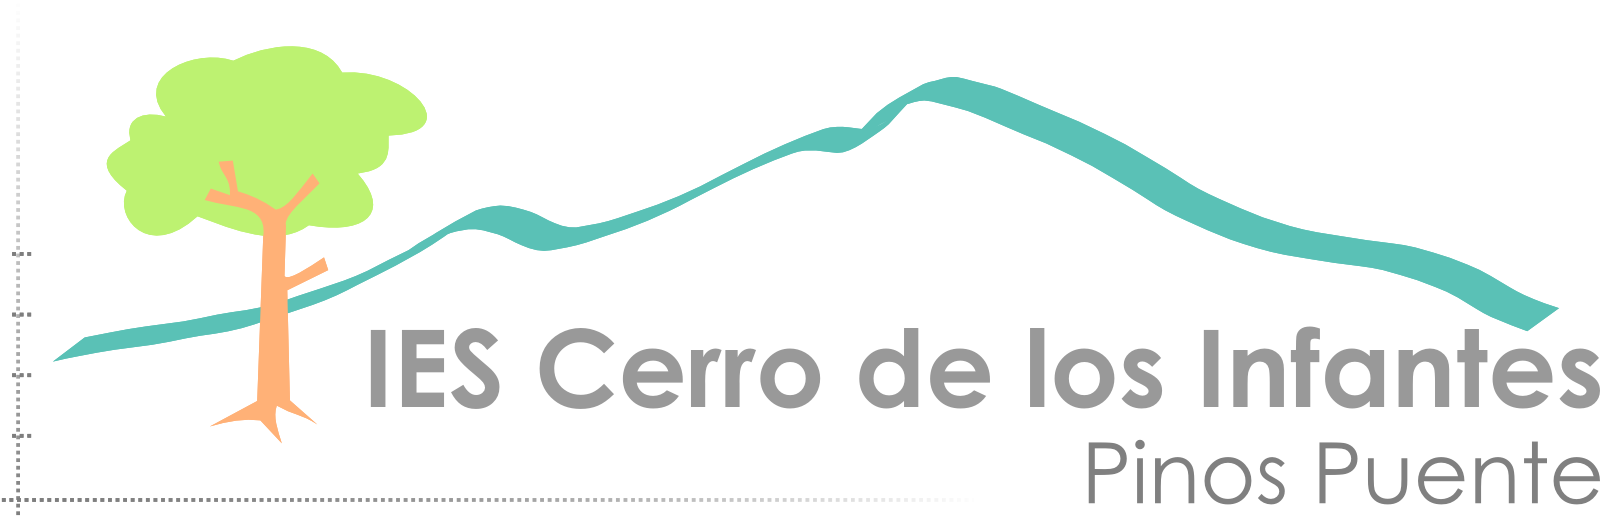 IES Cerro de los Infantes  - Pinos Puente